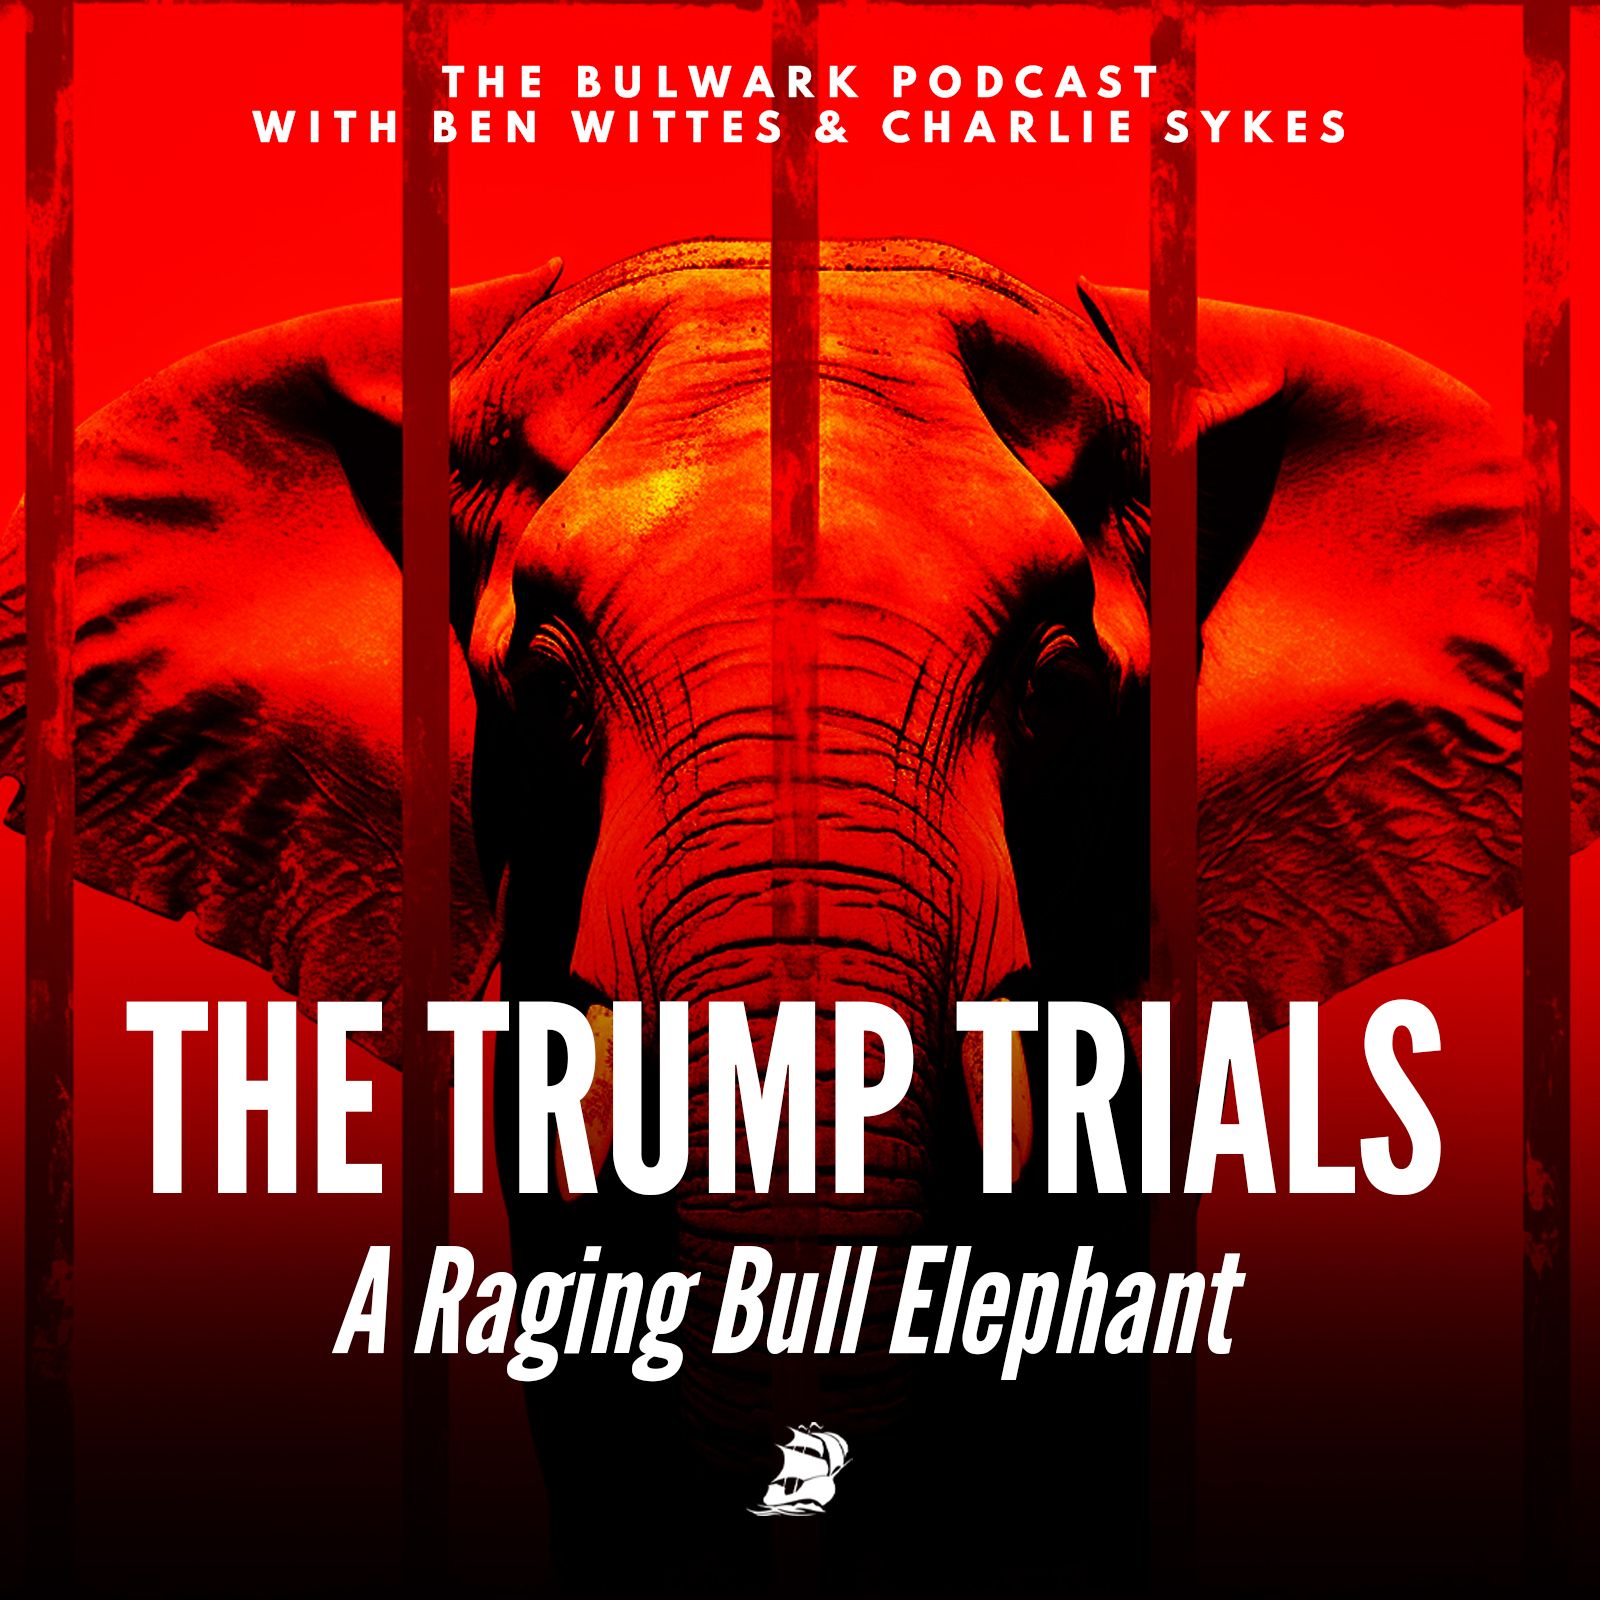 A Raging Bull Elephant by The Bulwark Podcast